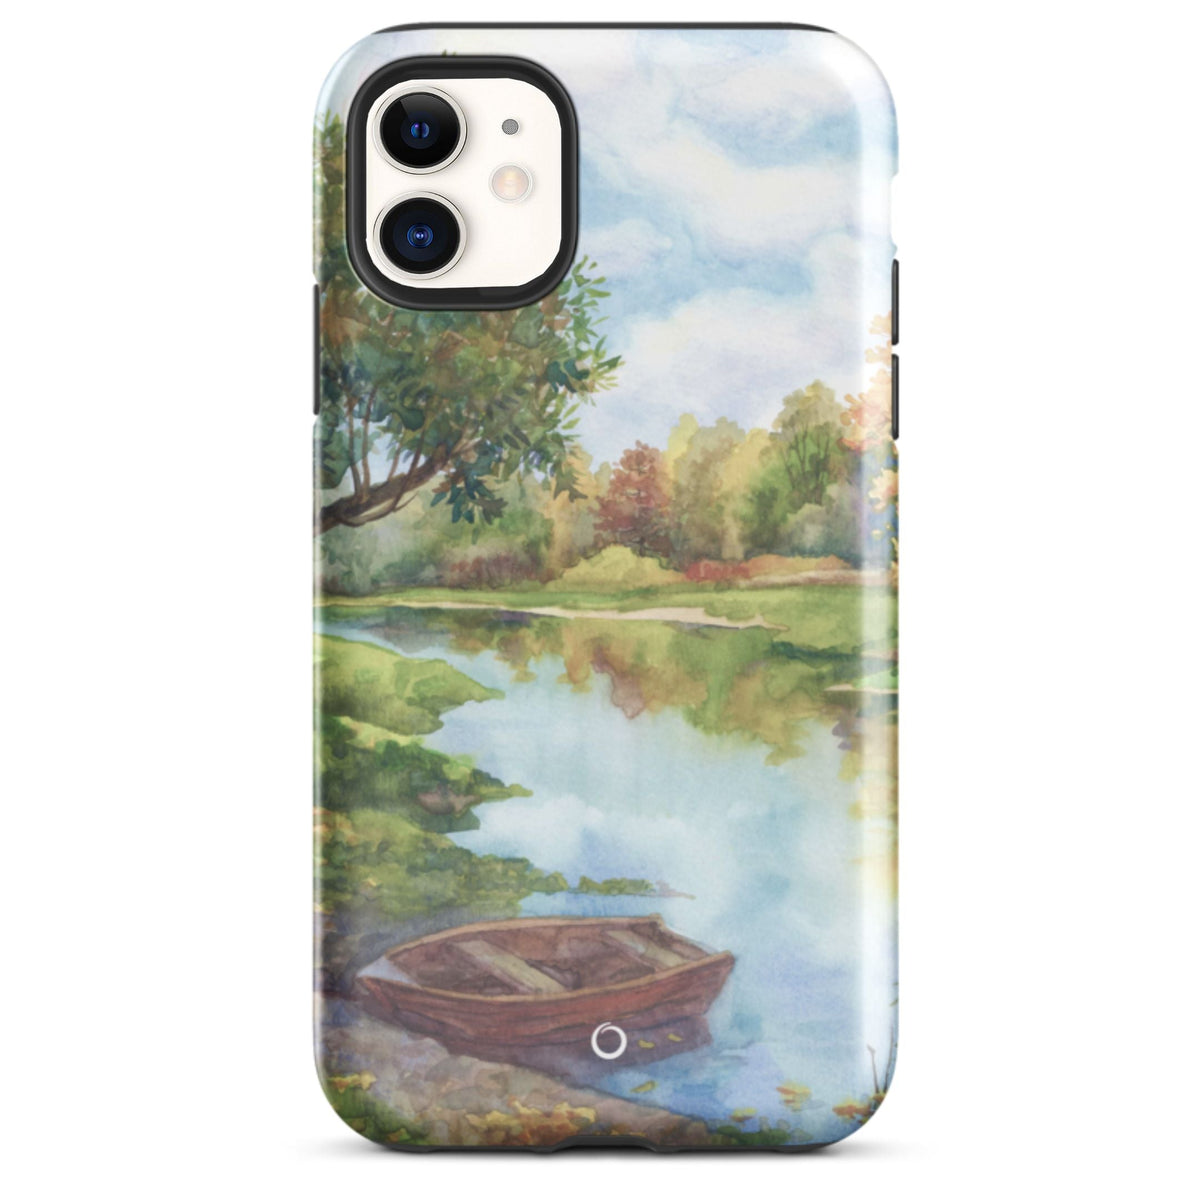 Lakeside Escape iPhone Case - iPhone 12 Mini